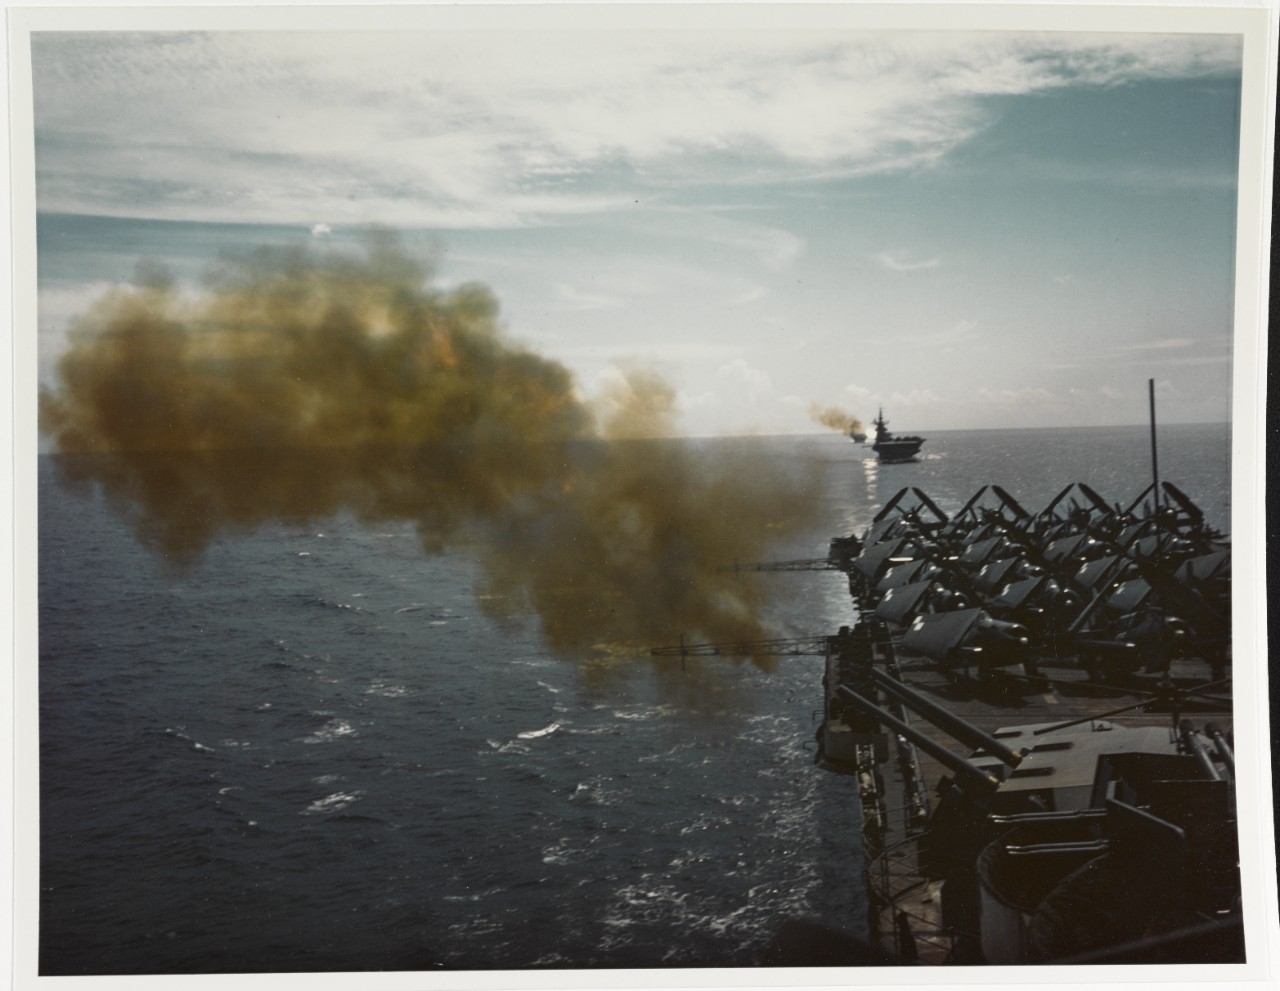 USS HORNET (CV-12) Firing gun battery in Western Pacific, circa June 1945